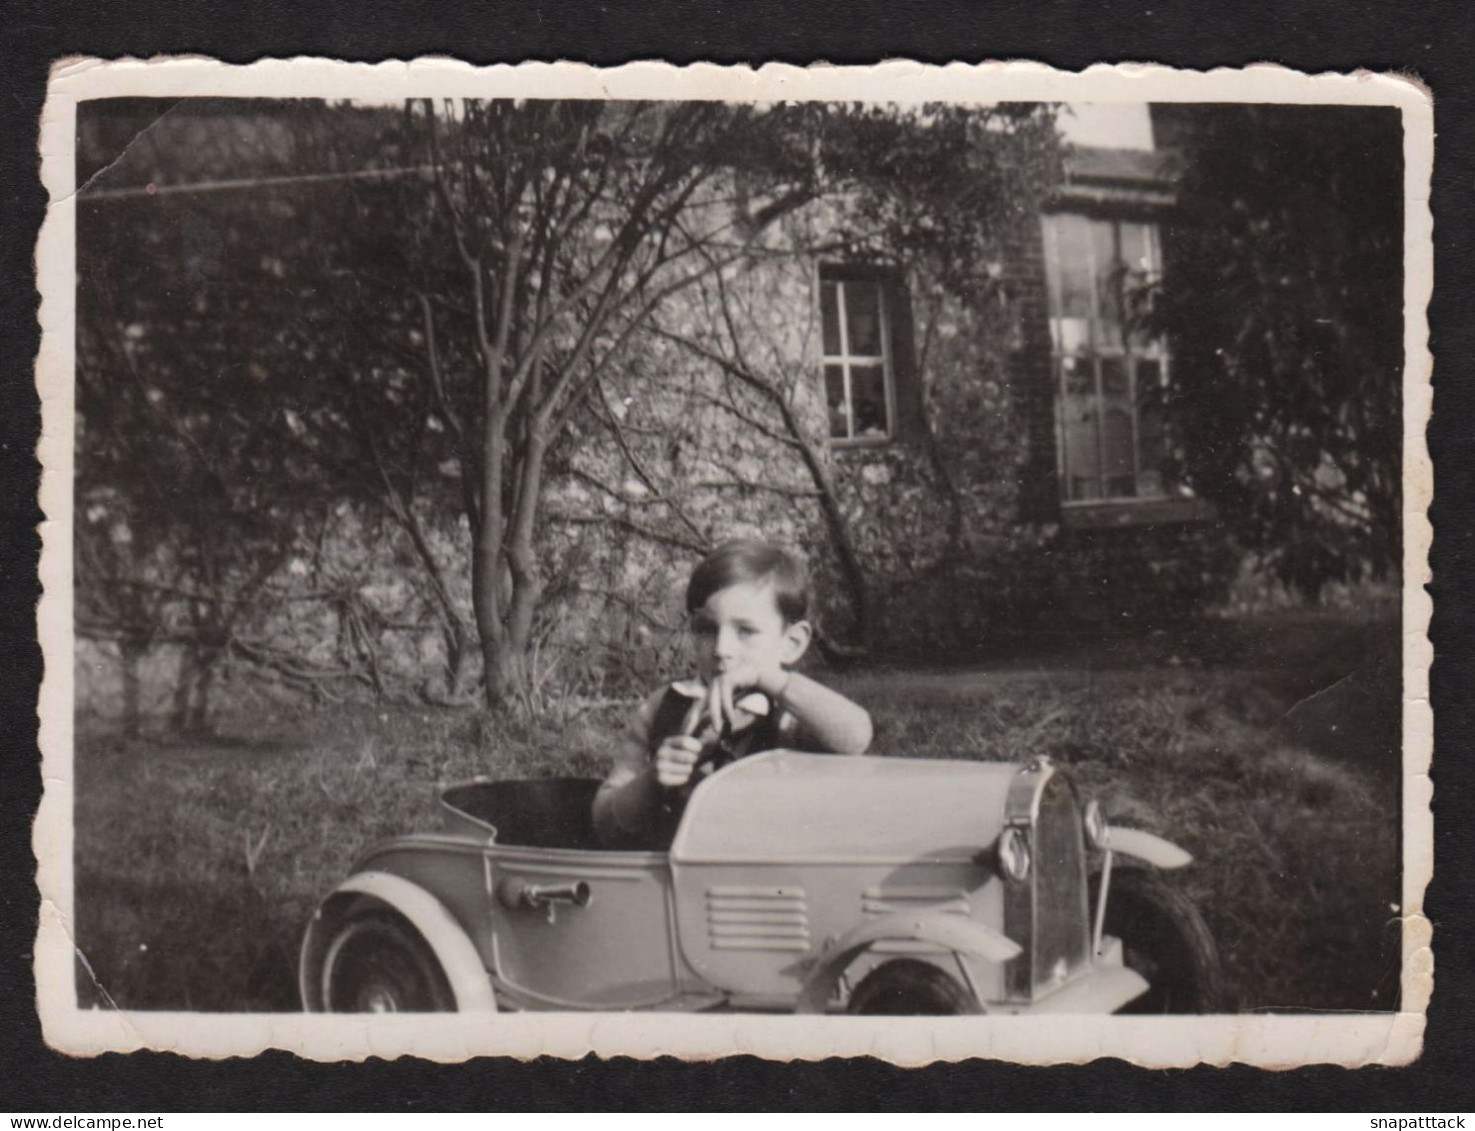 Jolie Photographie D'un Enfant Dans Une Belle Voiture à Roulette, Automobile, Jouet, Vintage, Années 40, 8,6x6,2 Cm - Guerre, Militaire